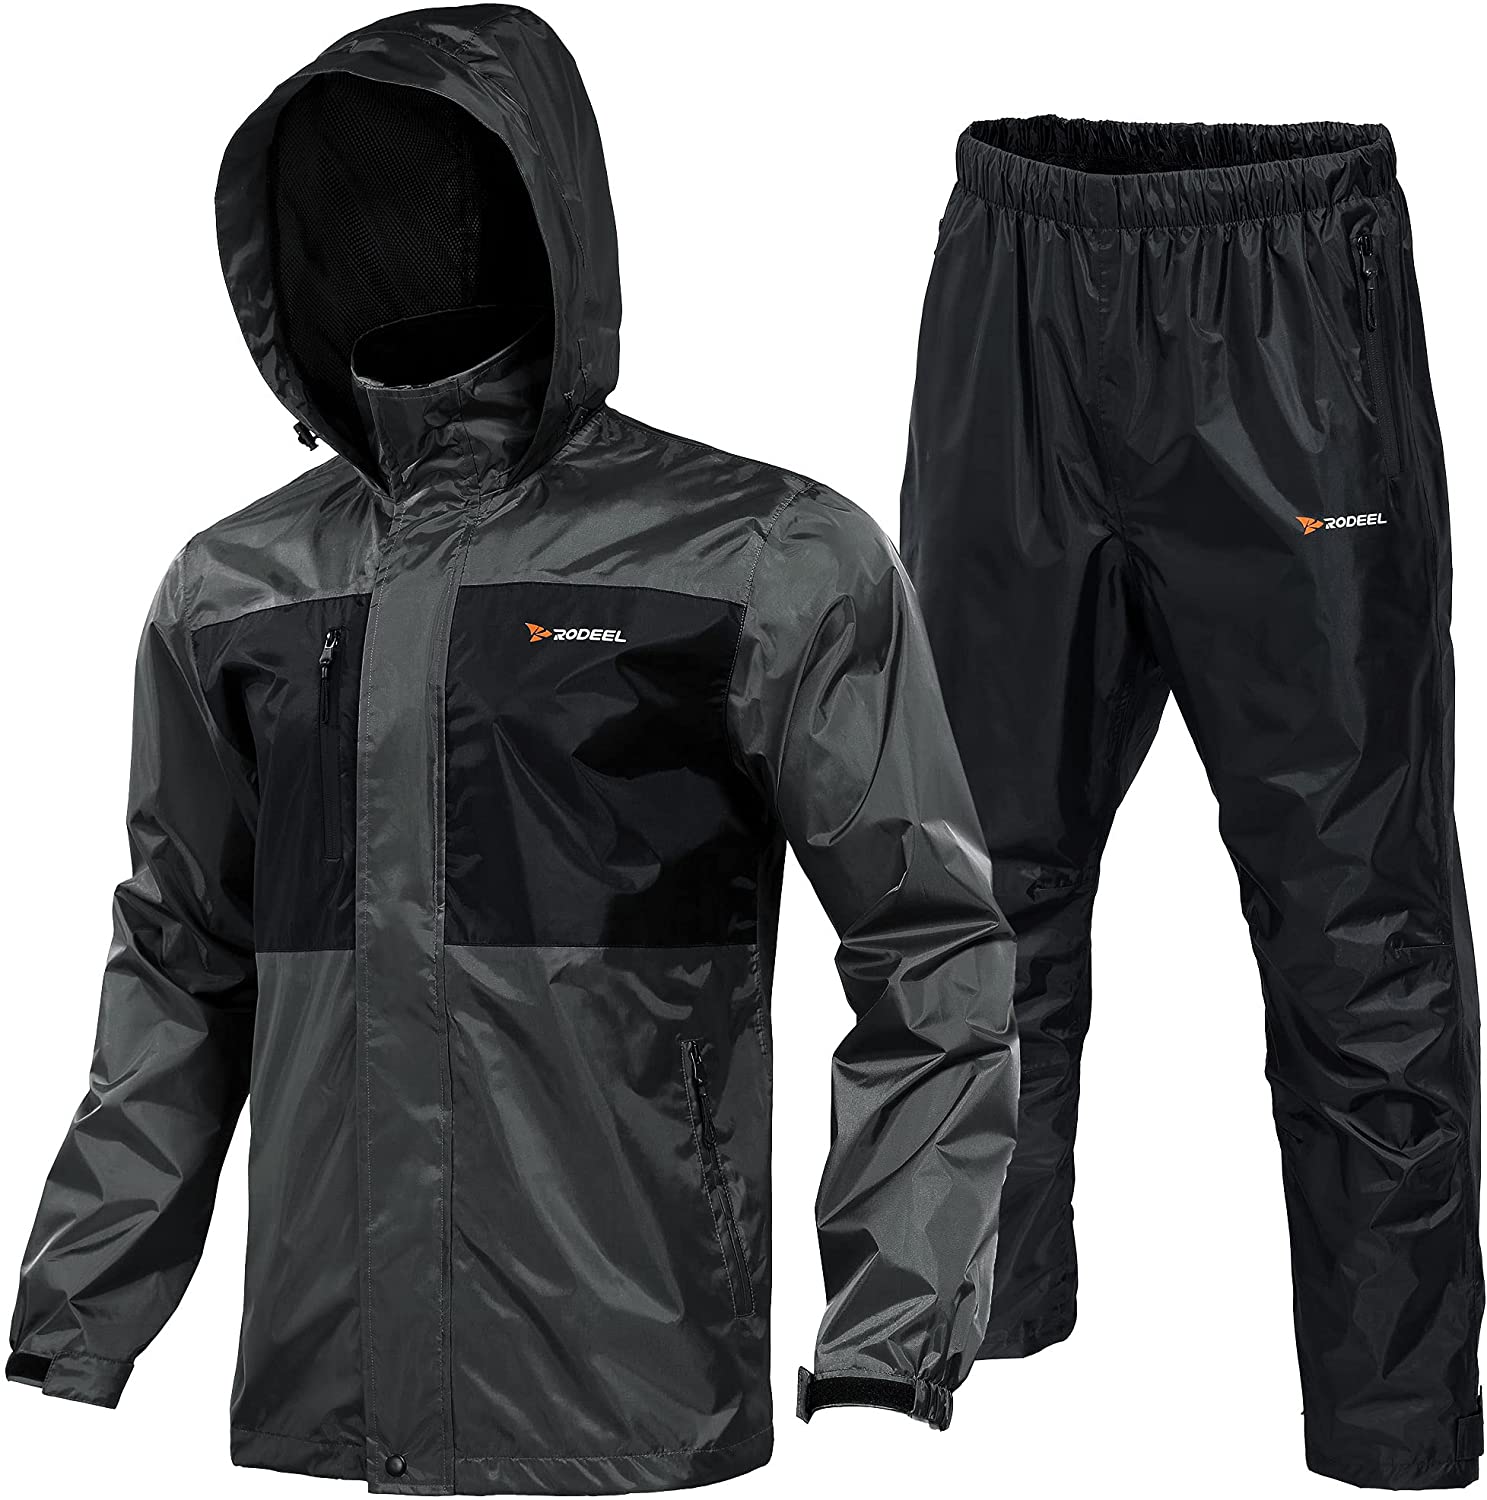 Rodeel Waterproof Fishing Rain Suit for Men (Rain gear Jacket & Trouser  Suit)